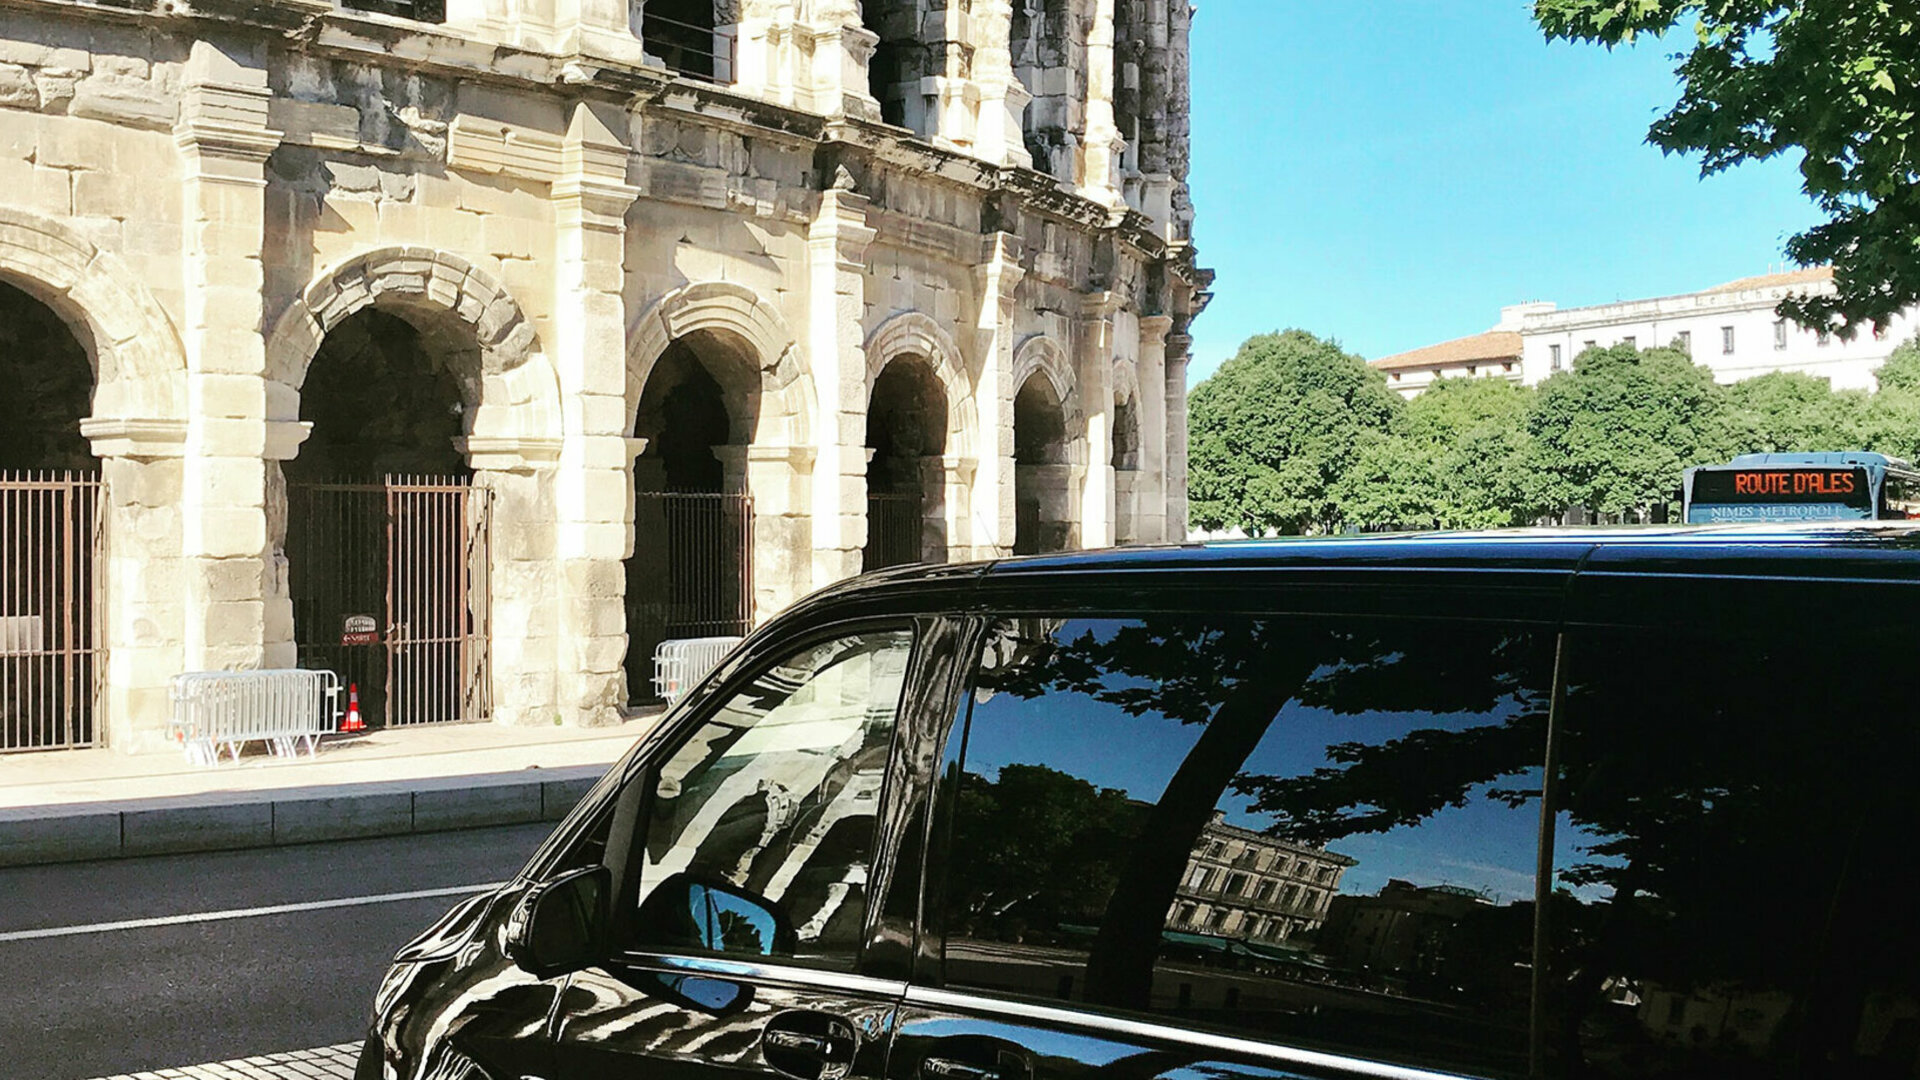 Réserver votre chauffeur avec voiture de luxe, MyCab Luxury dans le Gard, Aude, Hérault et Vaucluse.